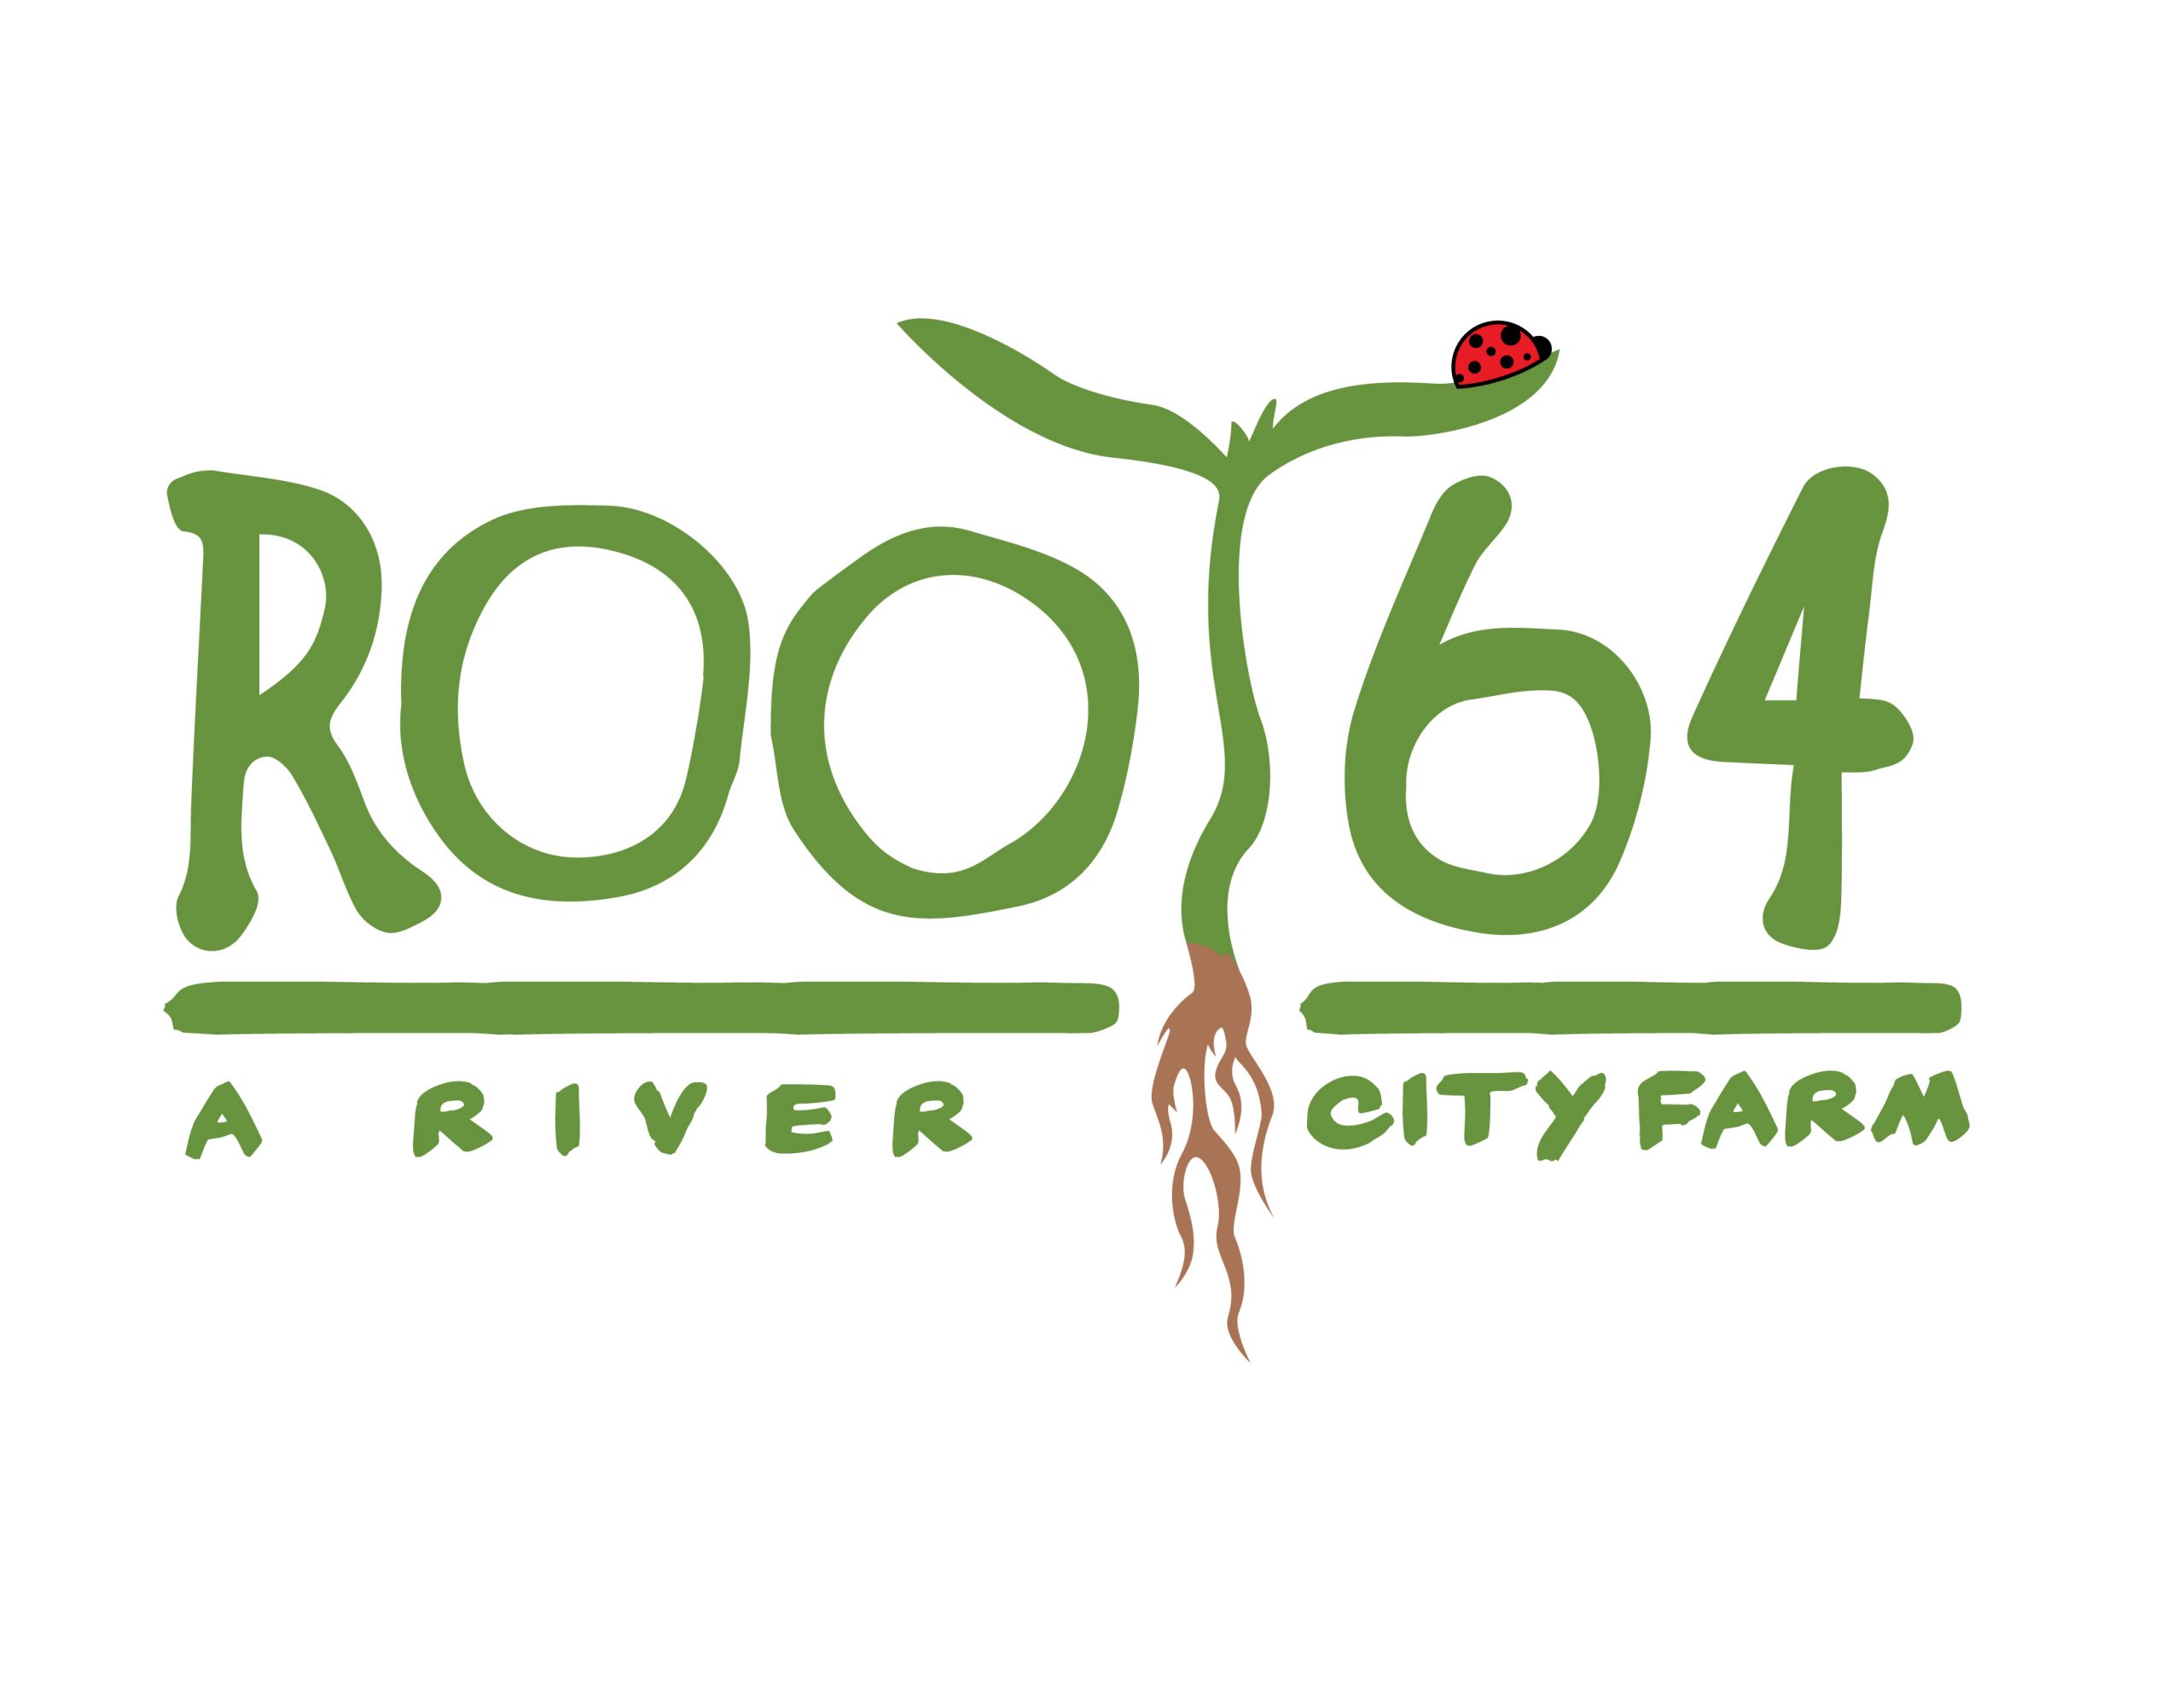 Root 64 - A River City Farm